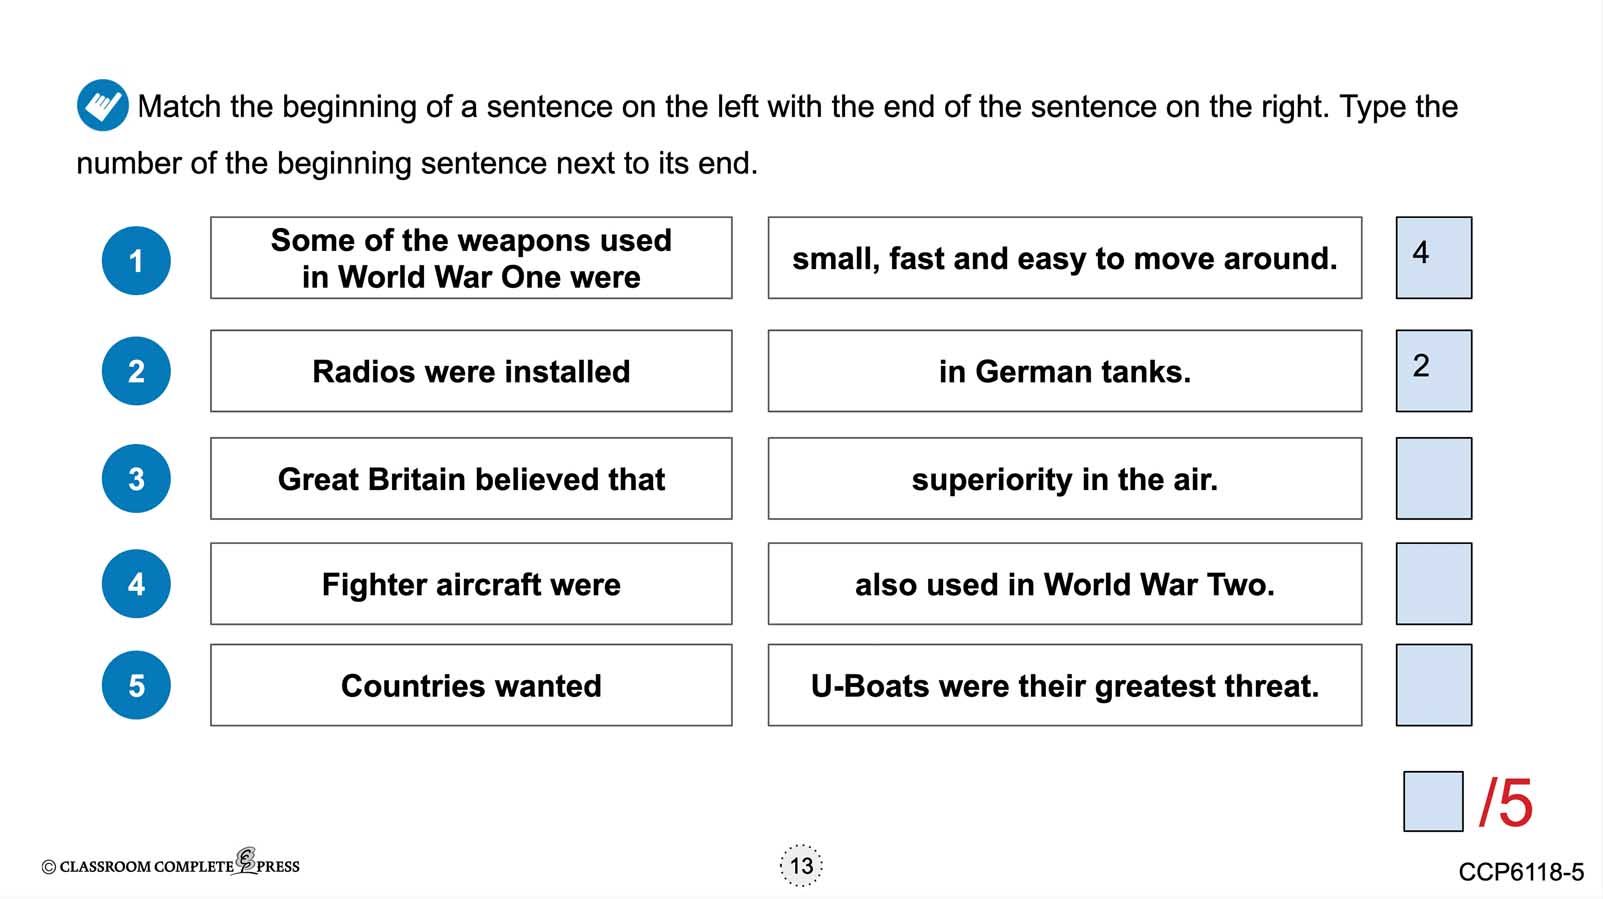 World War 2: New Weapons of War - Google Slides Gr. 5-8 - eBook